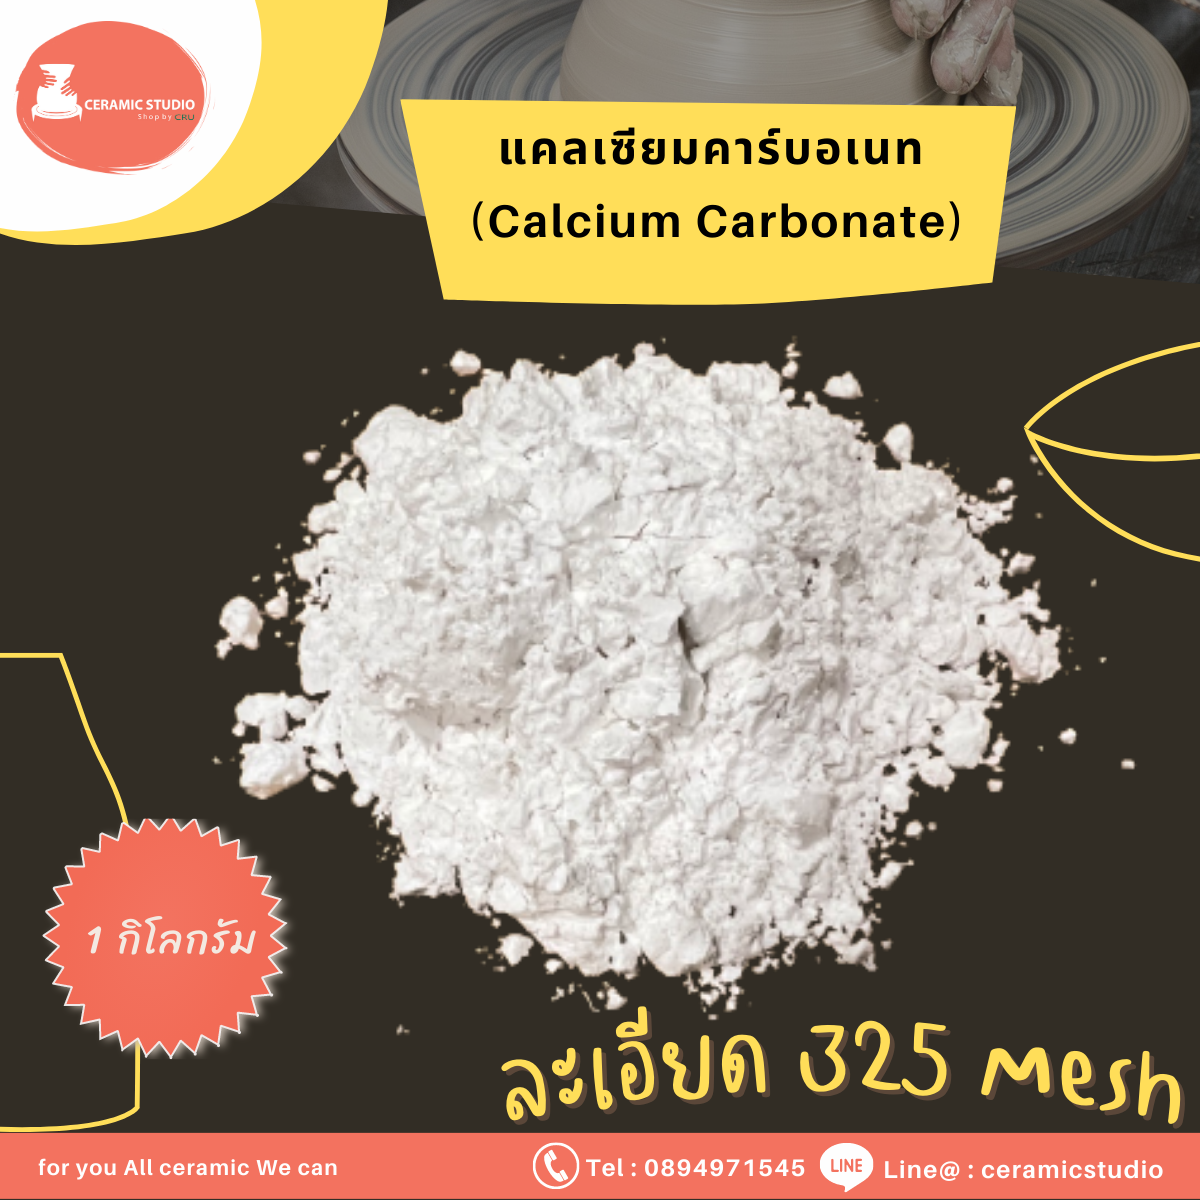 Calcium Carbonate (Whiting)